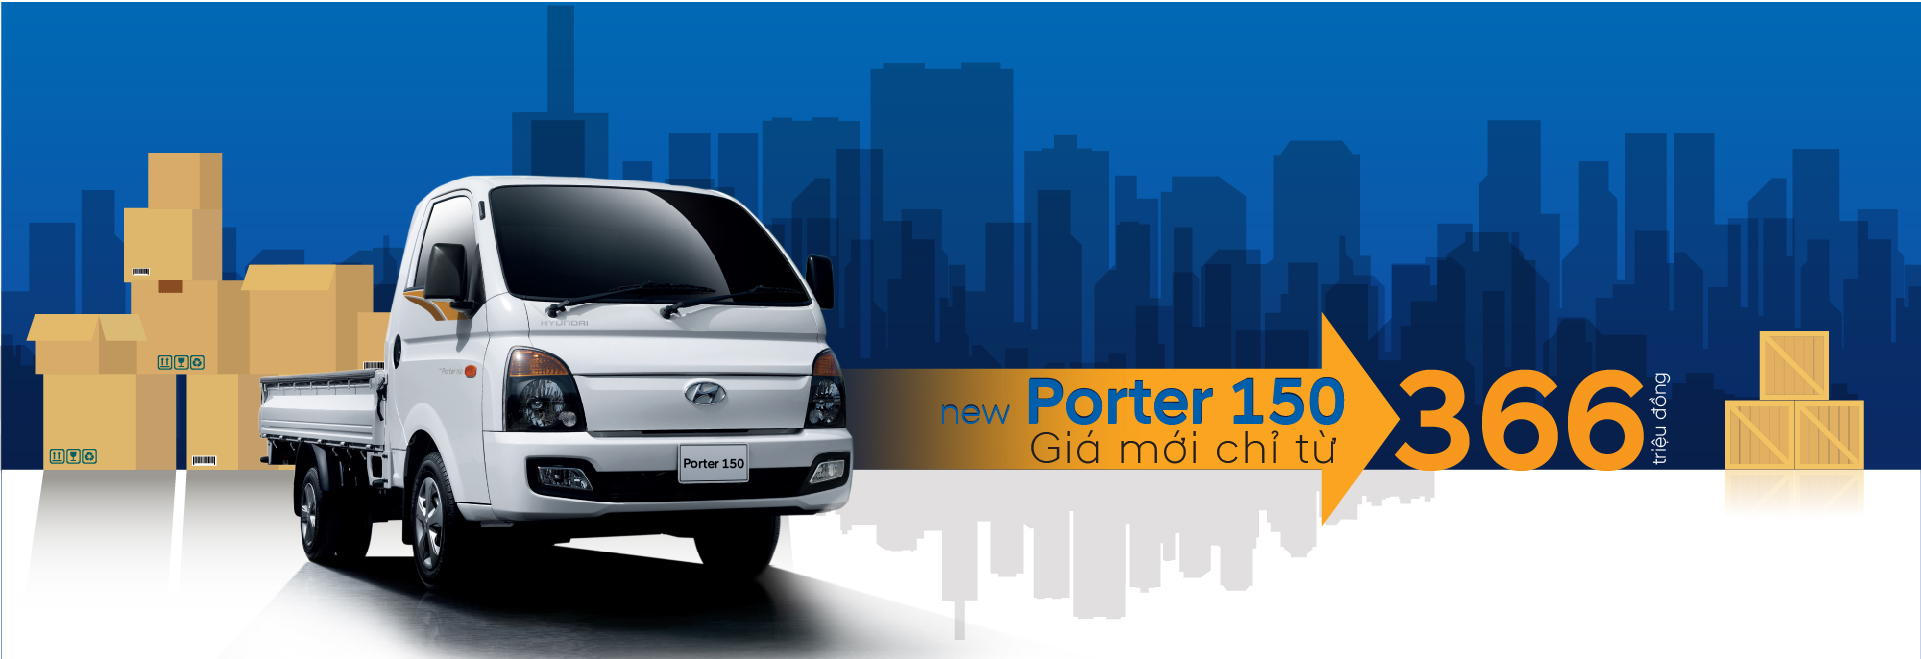 New Porter 150 - Giá mới chỉ từ 366 triệu đồng